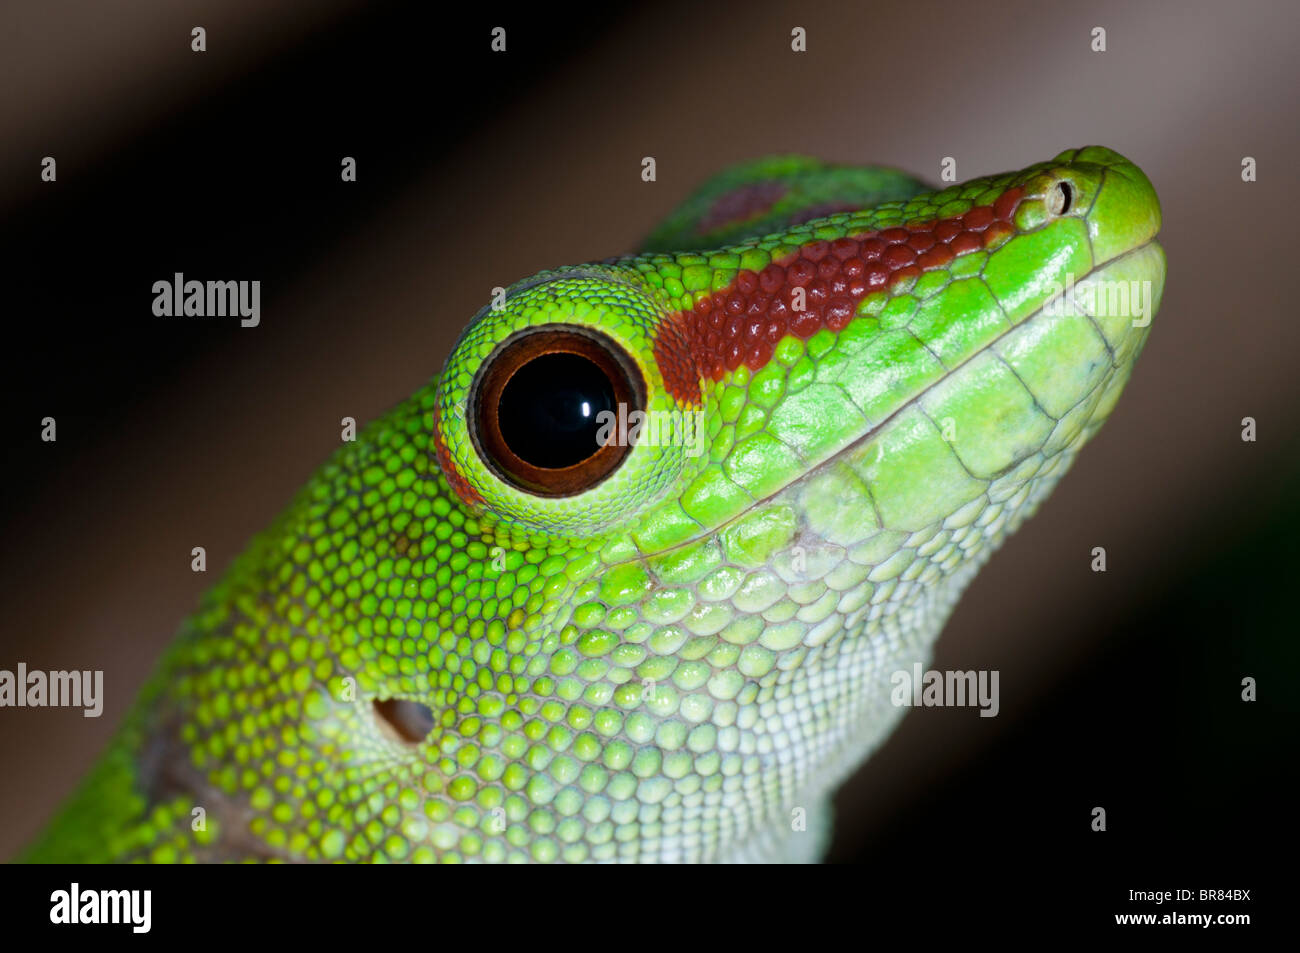 Phelsuma madagascariensis grandis, Giant Day Gecko Stock Photo